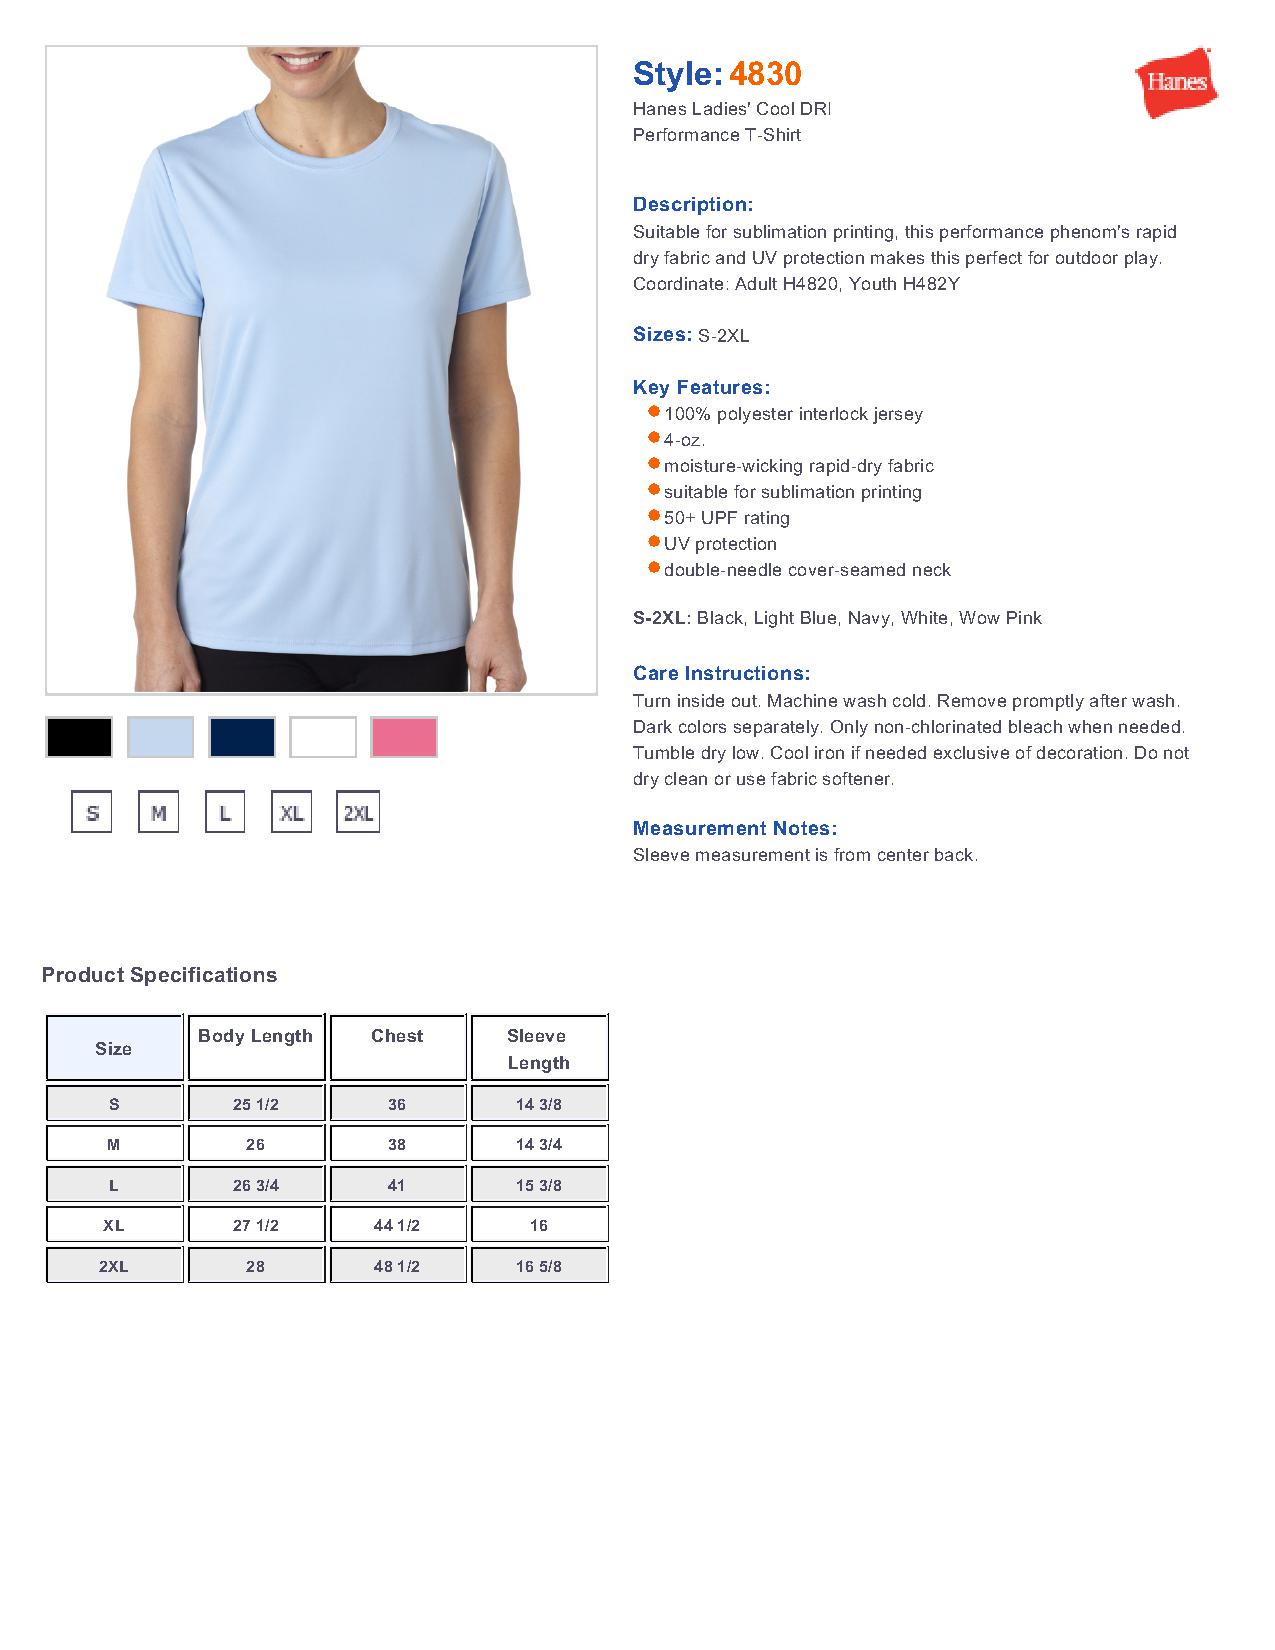 Hanes 4830 - Ladies' Cool DRI Performance T-Shirt $8.68 - T-Shirts